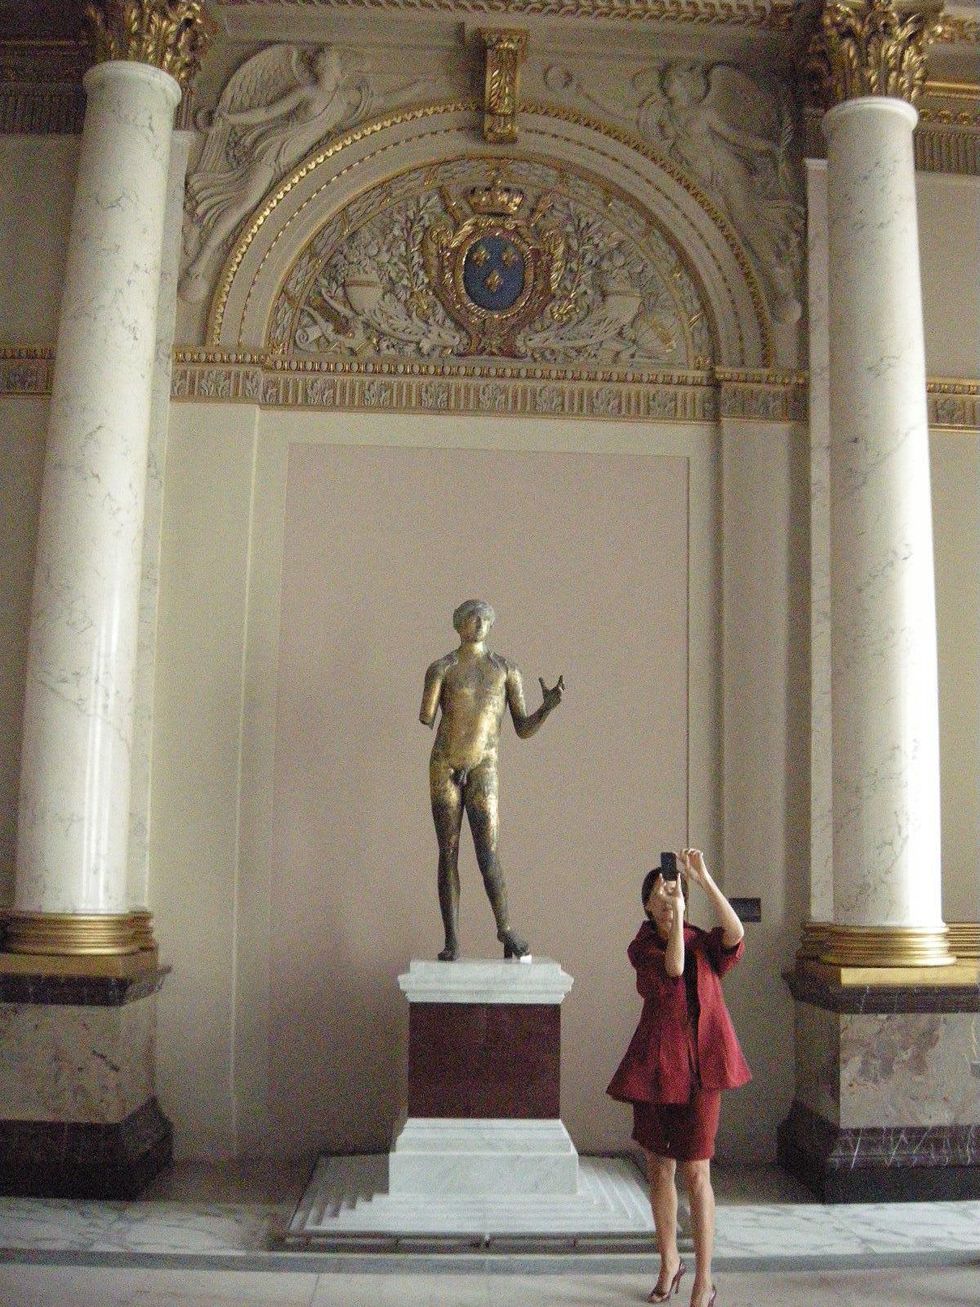 Louvre Paris tour July 2013 woman and statue